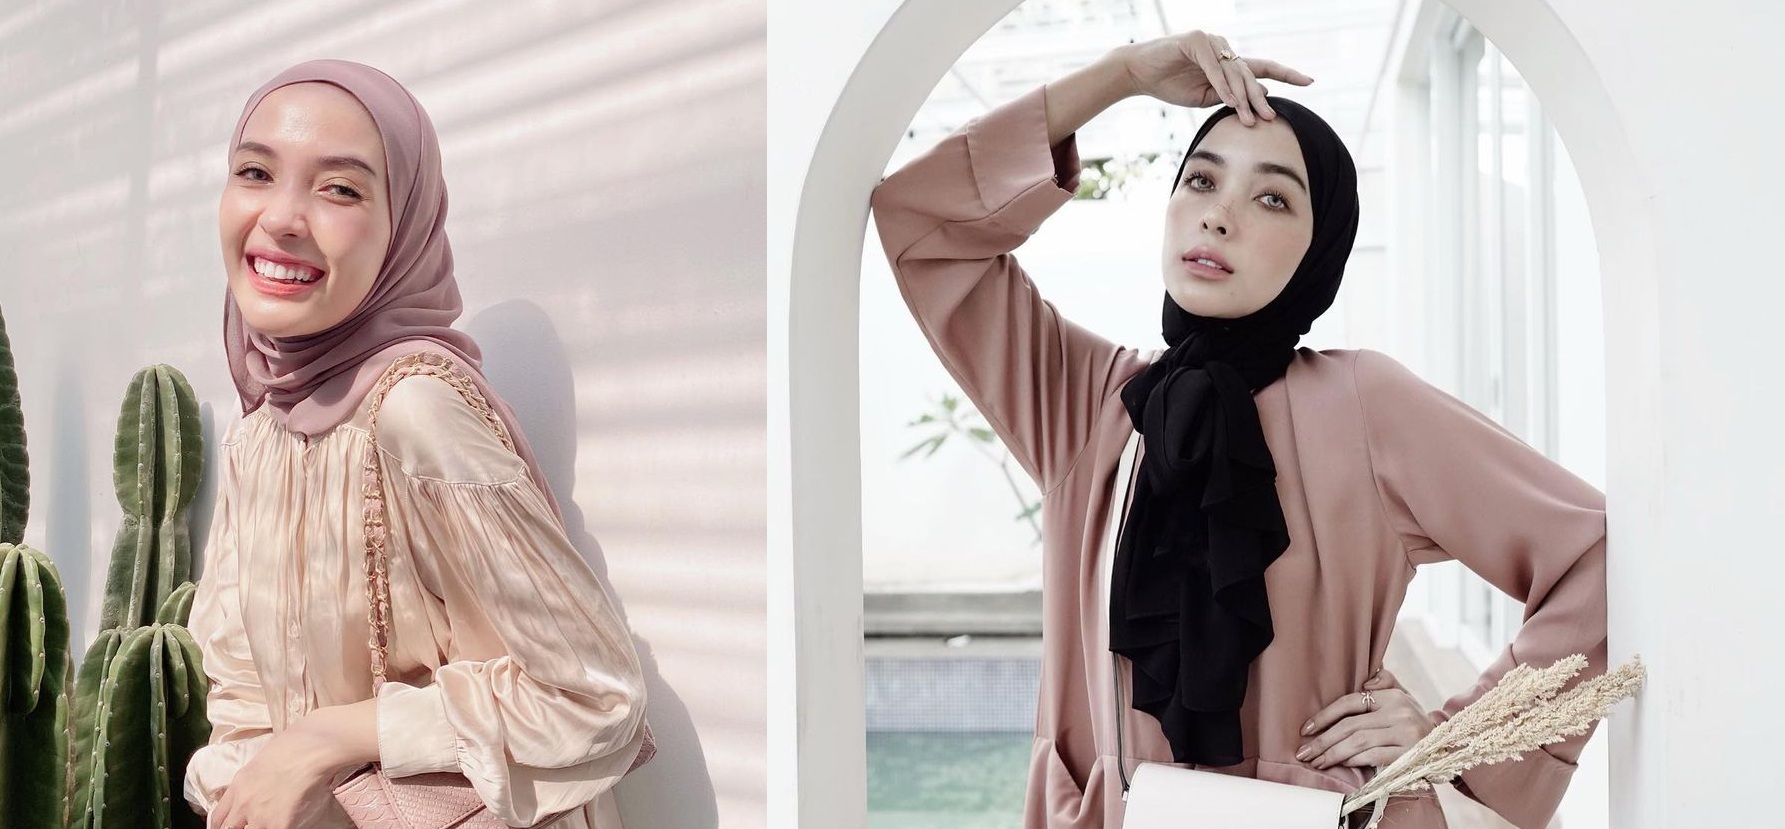 Profil dan Biodata Hamidah Rahmayanti: Suami, Agama, Instagram, Presenter dan Hijabers Hits